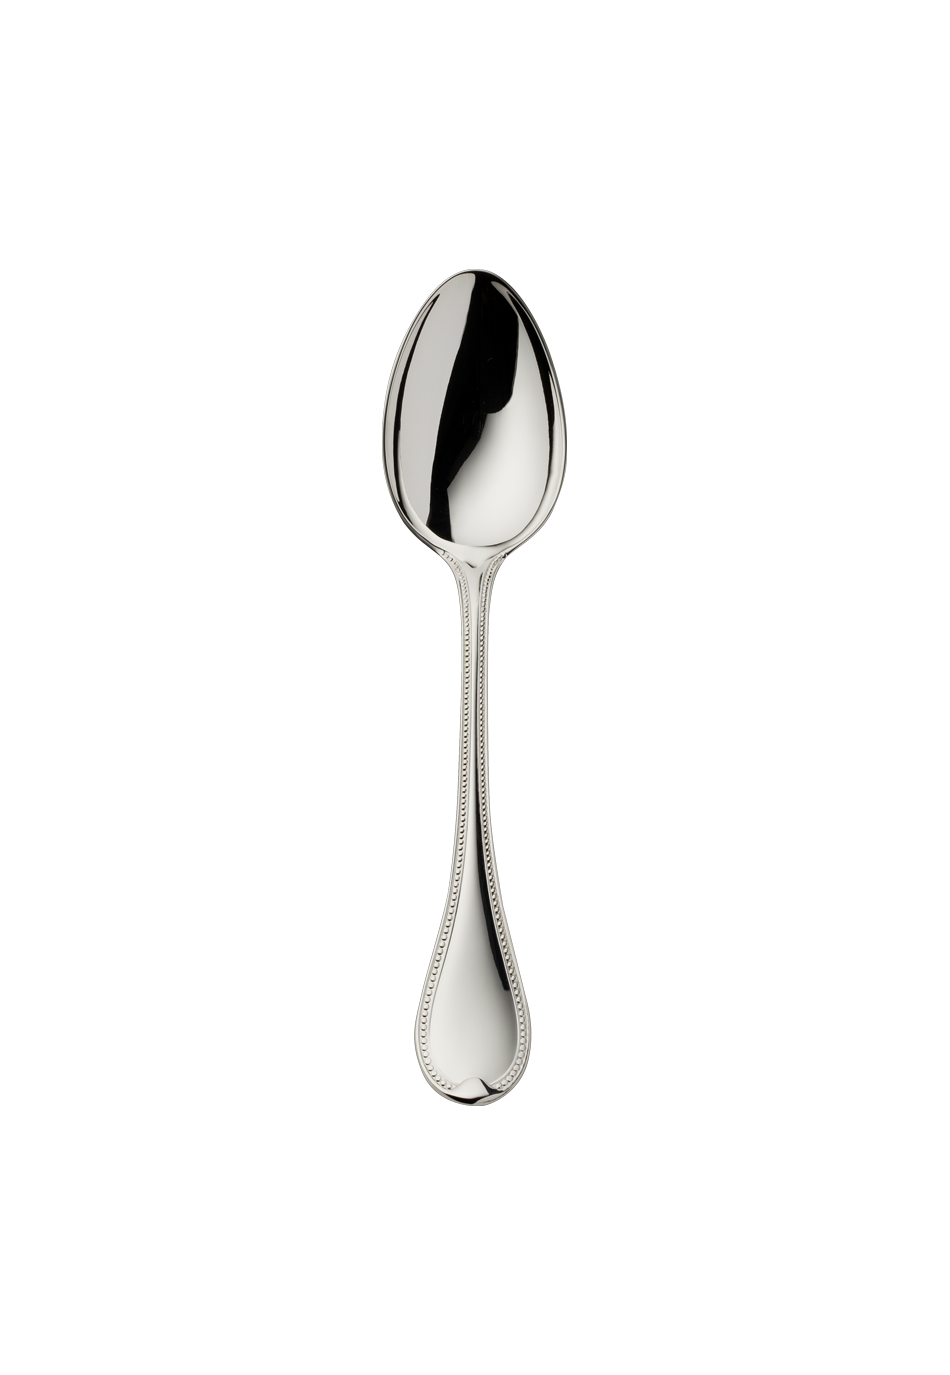 Französisch-Perl Children's Spoon (150g massive silverplated)